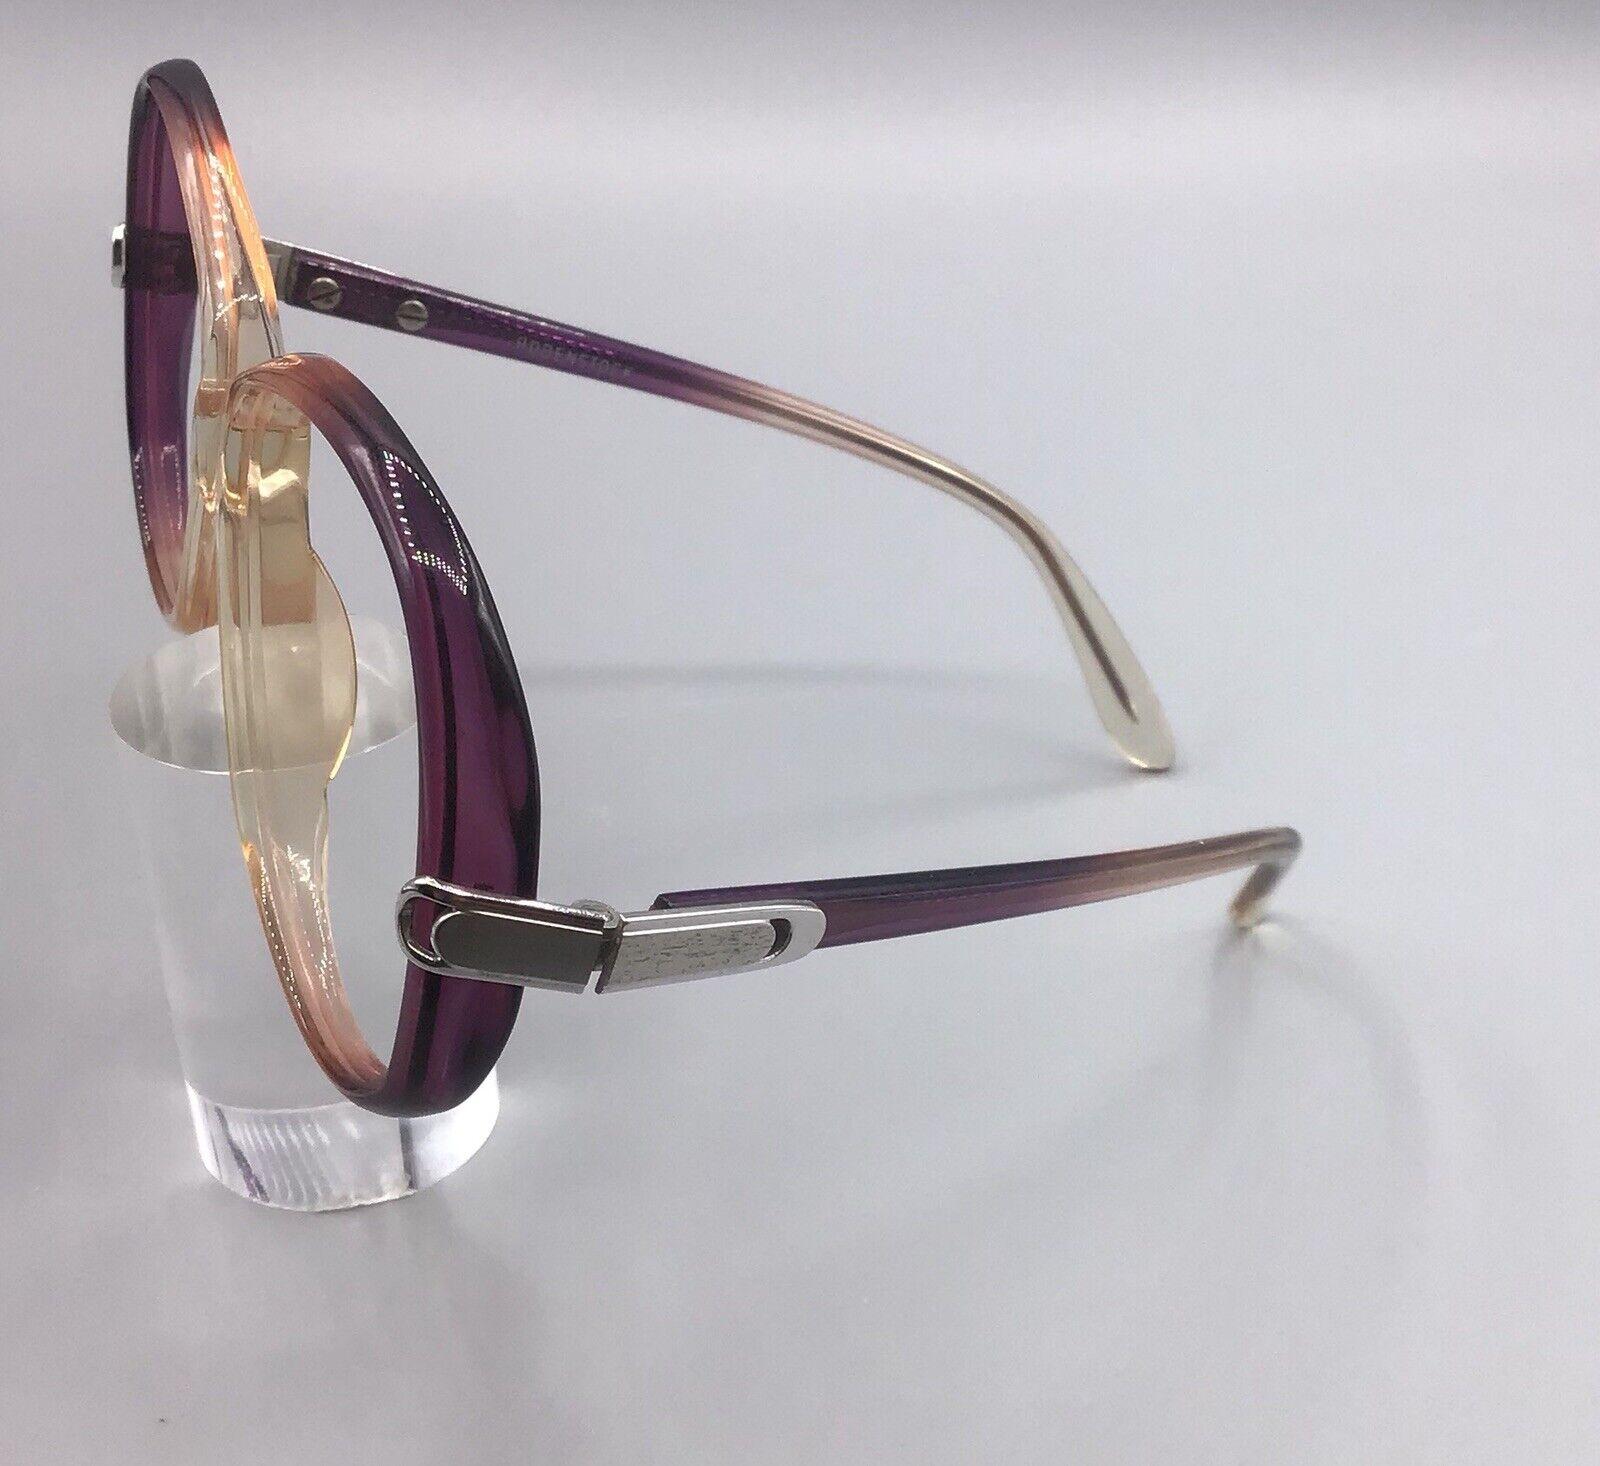 Rodenstock exclustu 515 occhiale vintage frame brillen eyeglasses